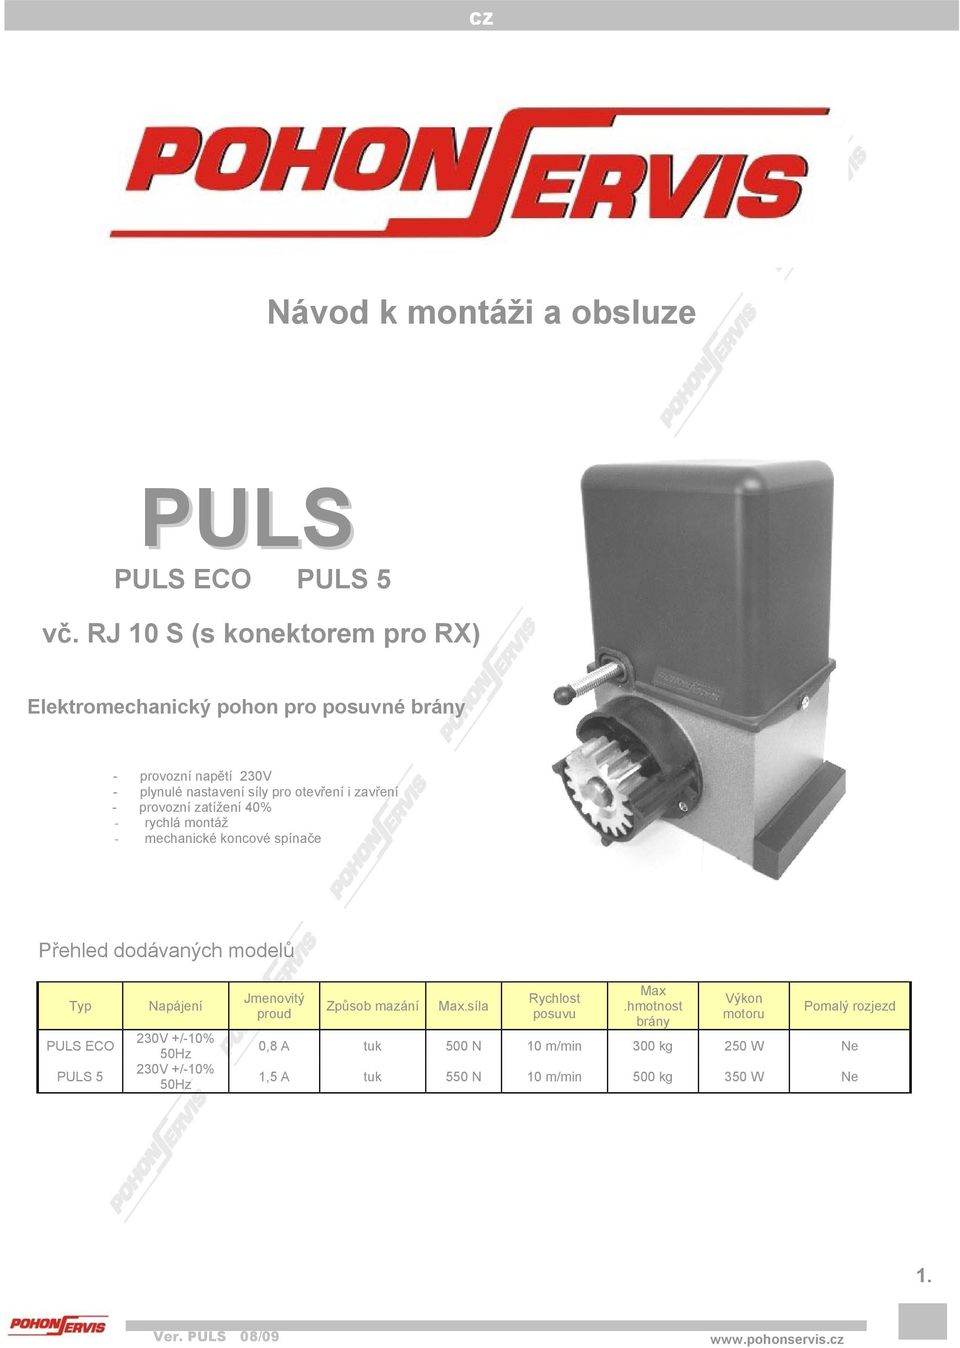 i zavření - provozní zatížení 40% - rychlá montáž - mechanické koncové spínače Přehled dodávaných modelů Typ PULS ECO PULS 5